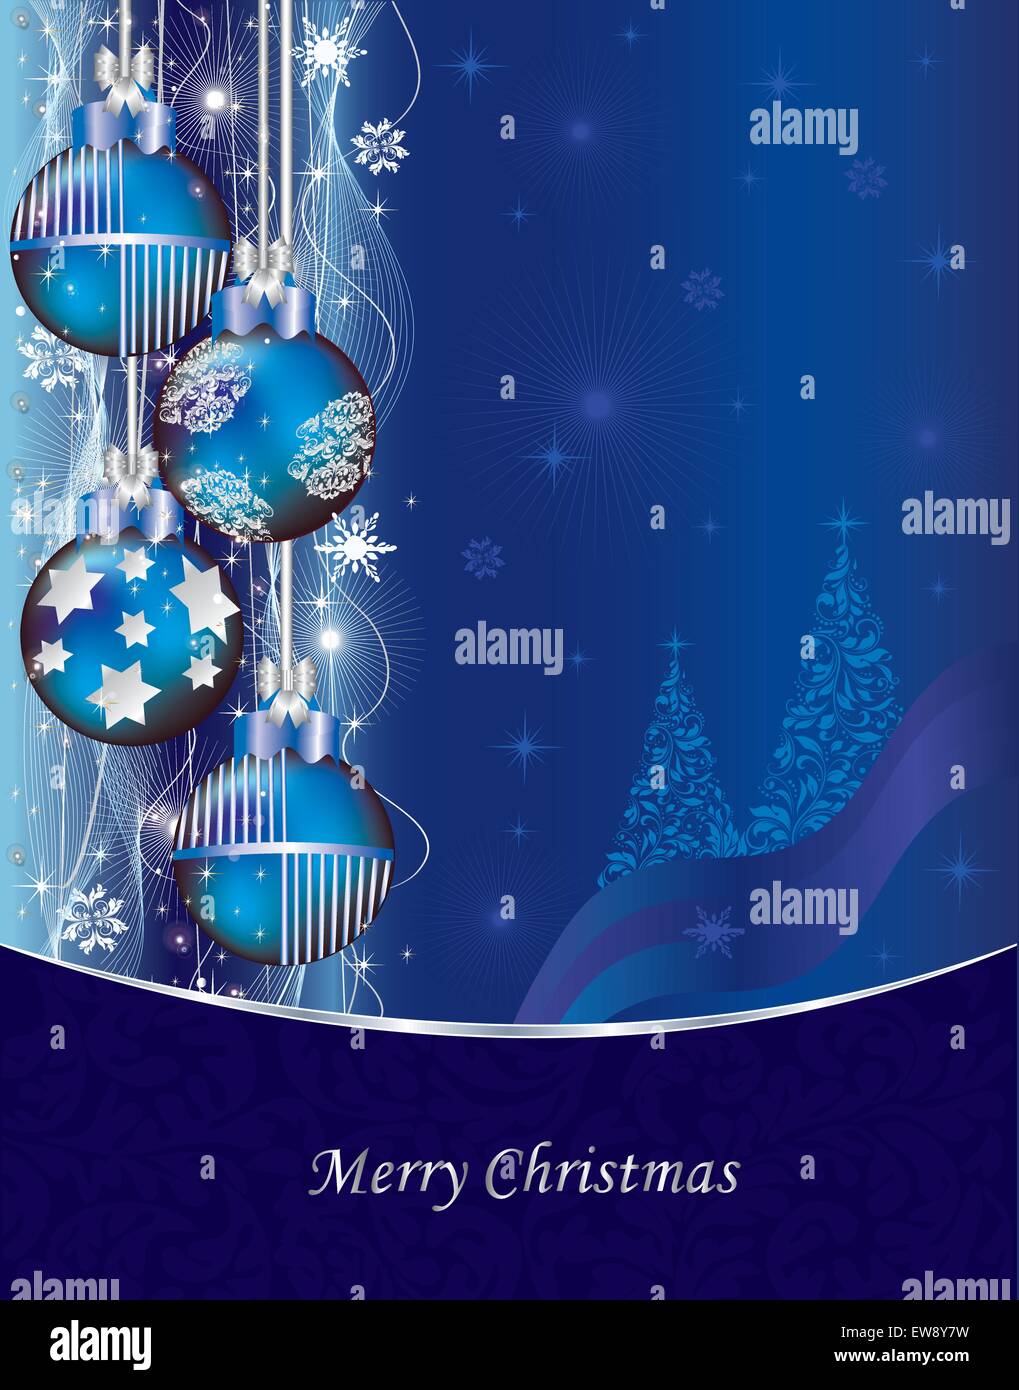 Vintage scheda di natale con ornati astratta elegante design floreale, royal blue con le palle di Natale, albero, stelle e fiocchi di neve Illustrazione Vettoriale